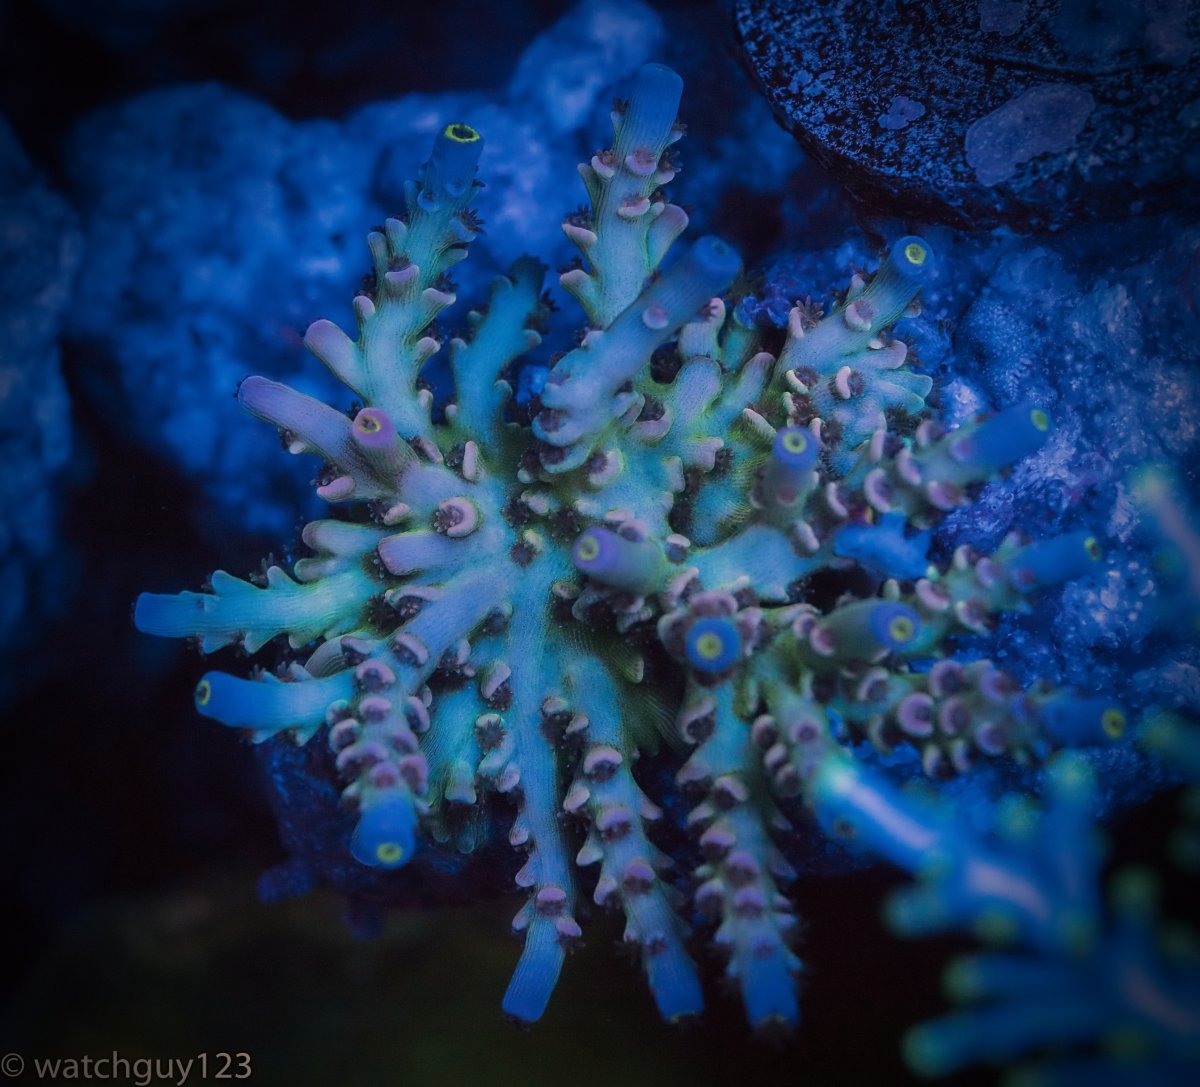 coral-10.jpg